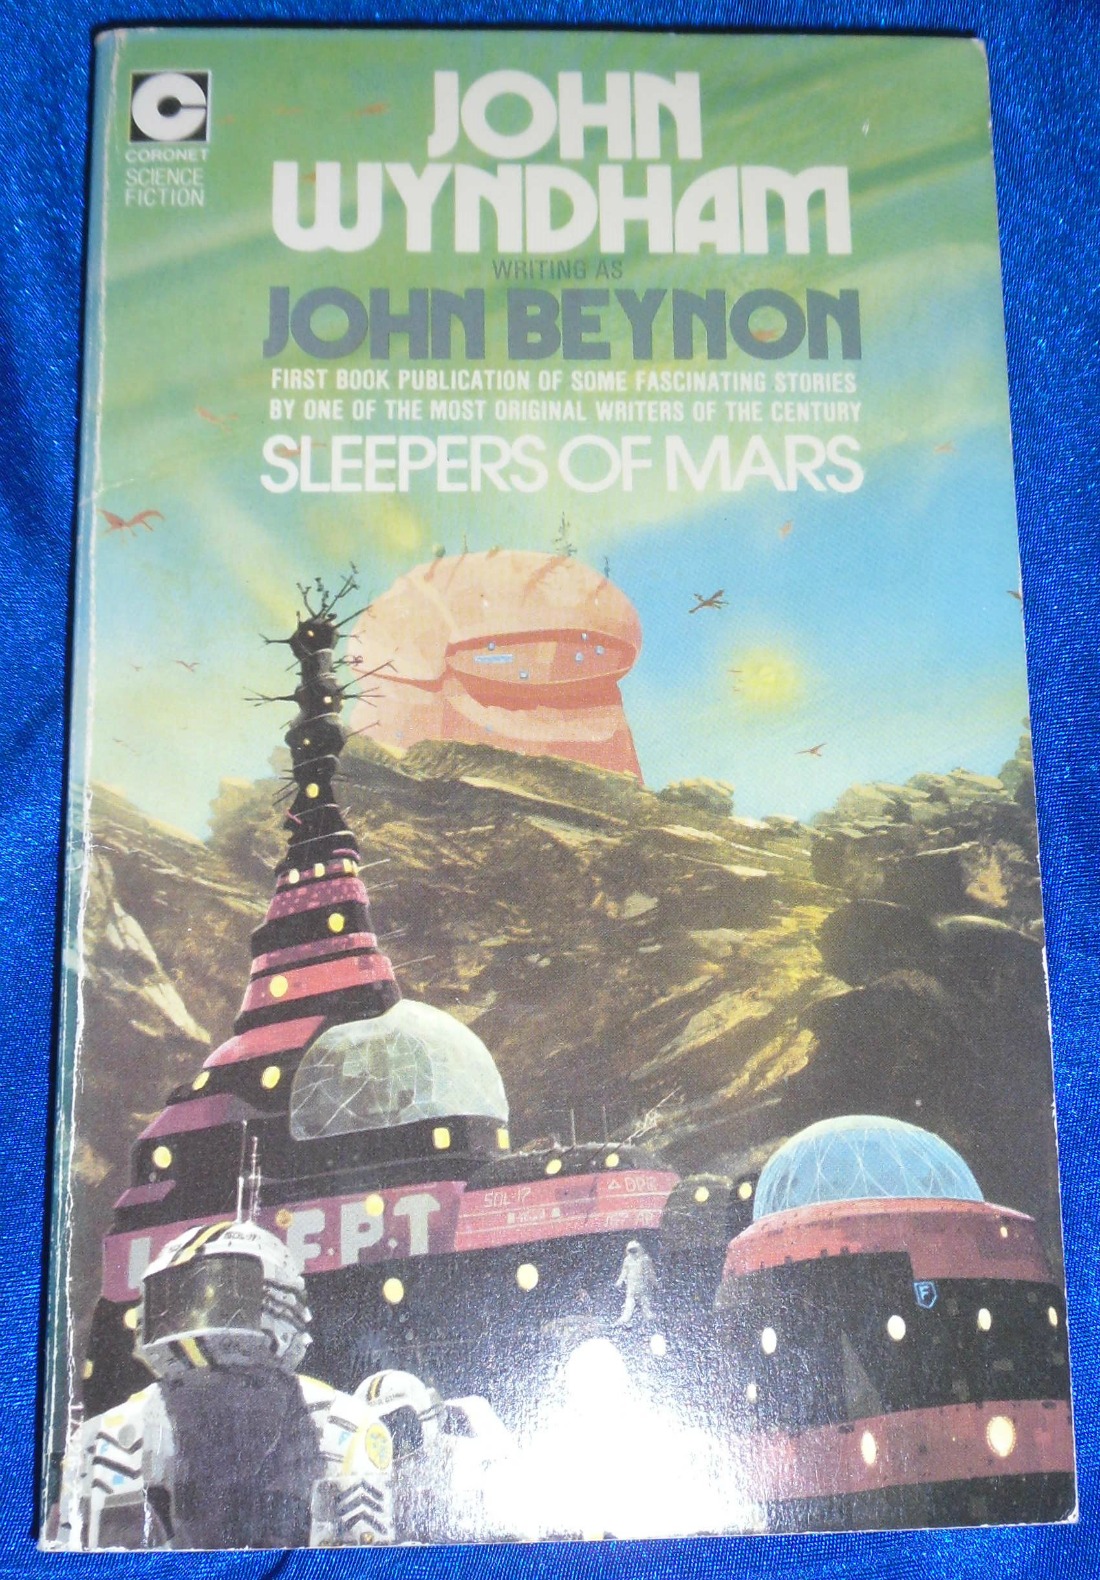 Sleepers of Mars - John Beynon